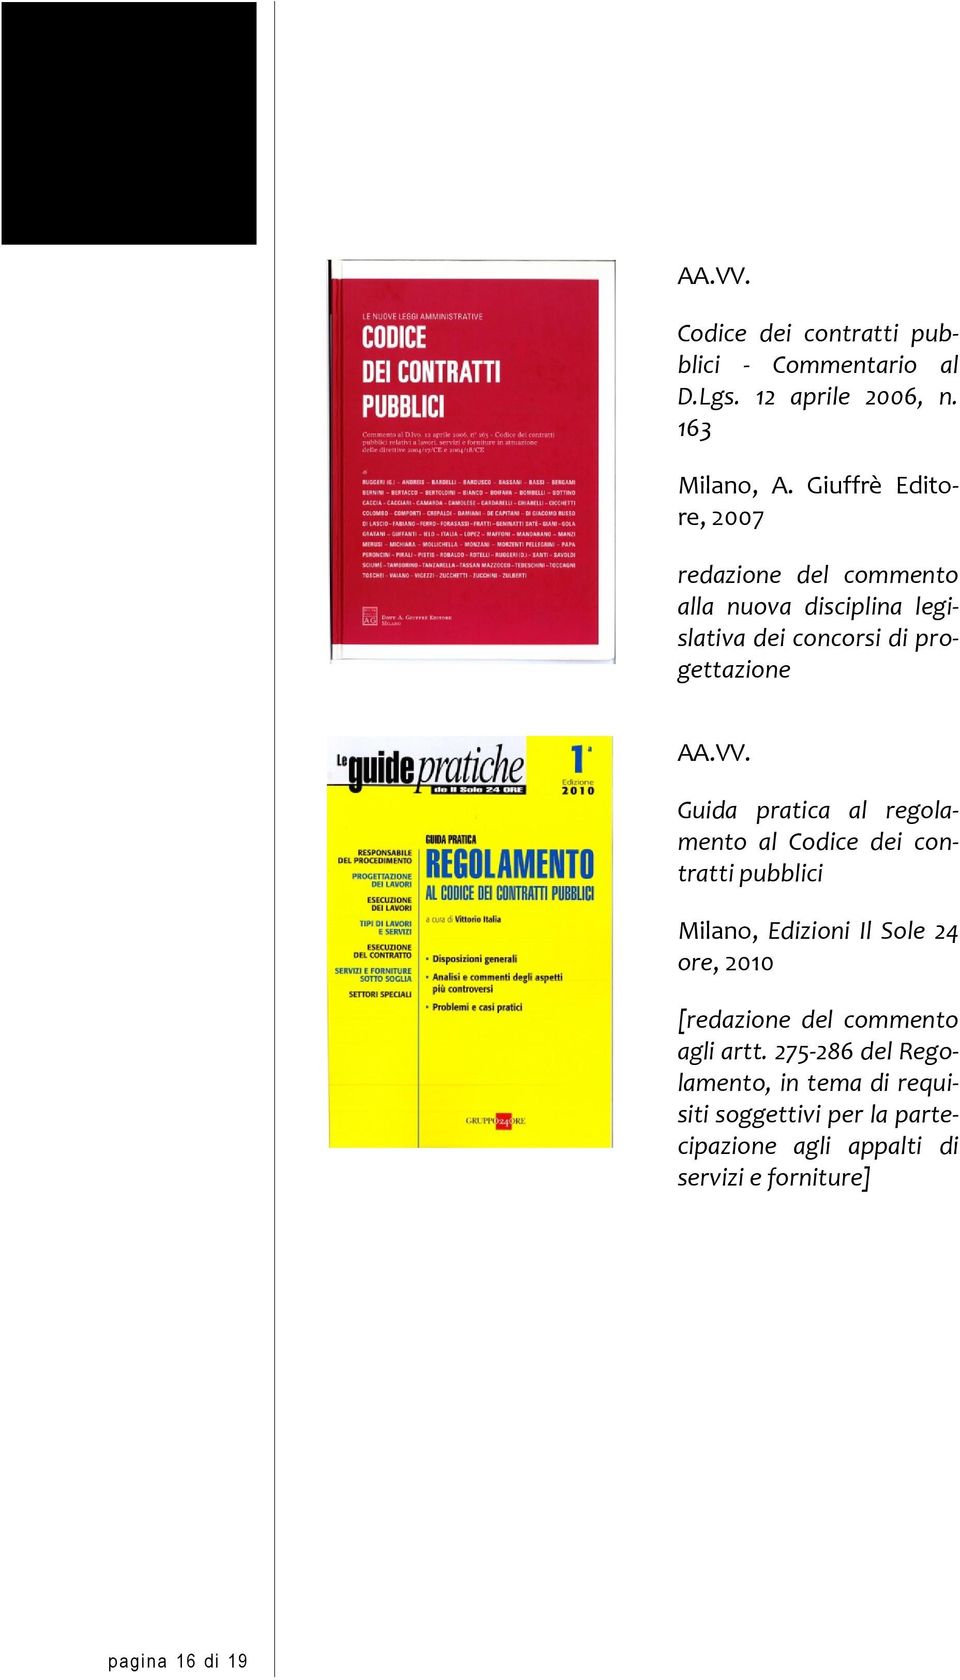 Guida pratica al regolamento al Codice dei contratti pubblici Milano, Edizioni Il Sole 24 ore, 2010 [redazione del